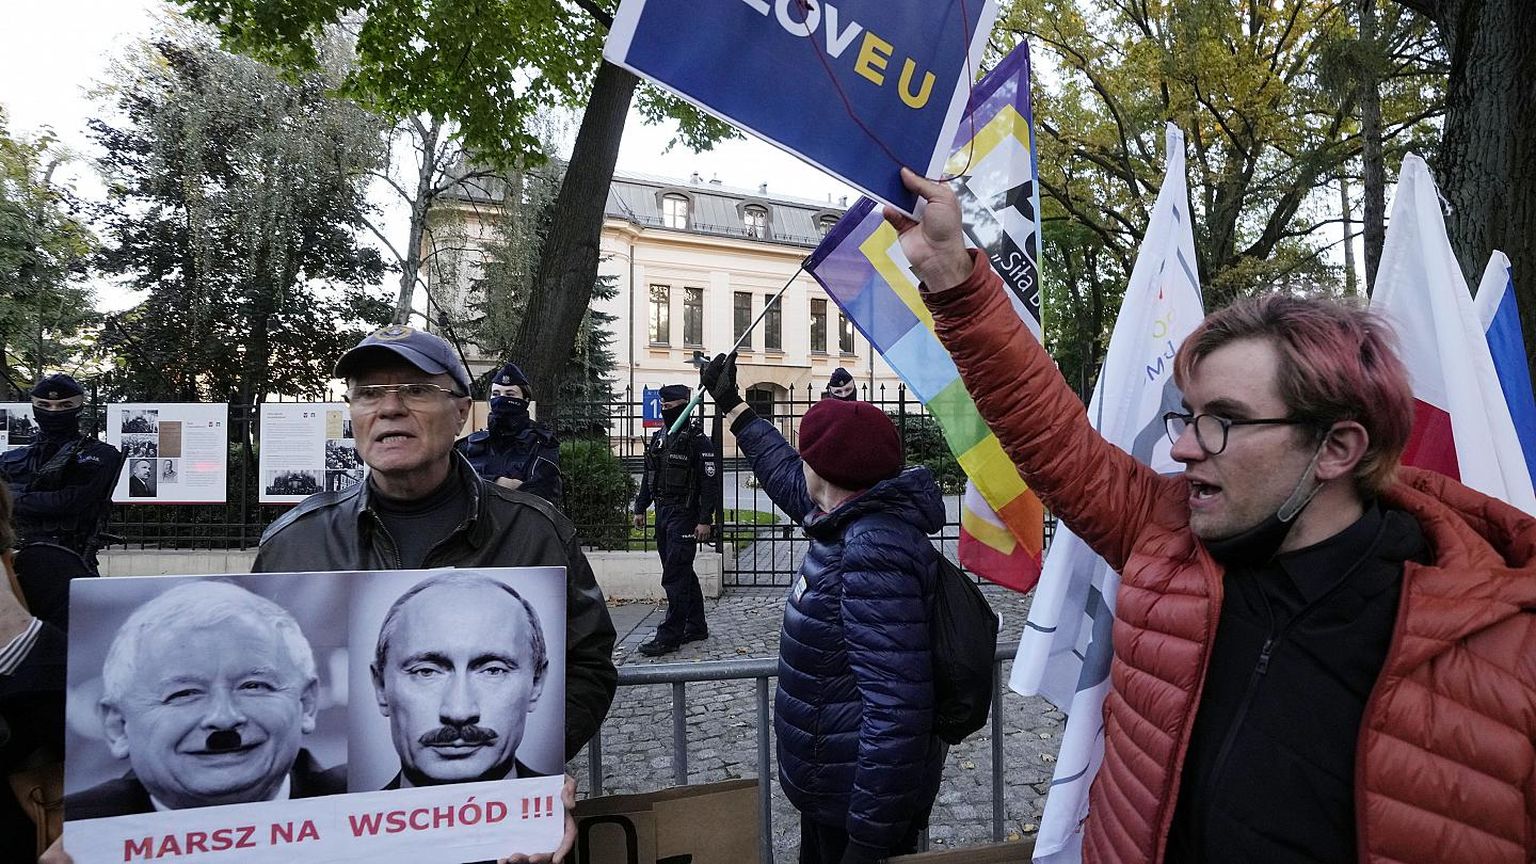 RAHULOLEMATUD: Euroliitu toetavad meeleavaldajad Varssavis Poola konstitutsioonikohtu hoone ees. Kohtu otsus Poola seaduste ülimuslikkusest Euroopa seaduste suhtes tähendab nende arvates marssimist itta. Plakatil on Vladimir Putini ja praeguse Poola tegeliku liidri Jarosław Kaszyński veidi töödeldud fotod.